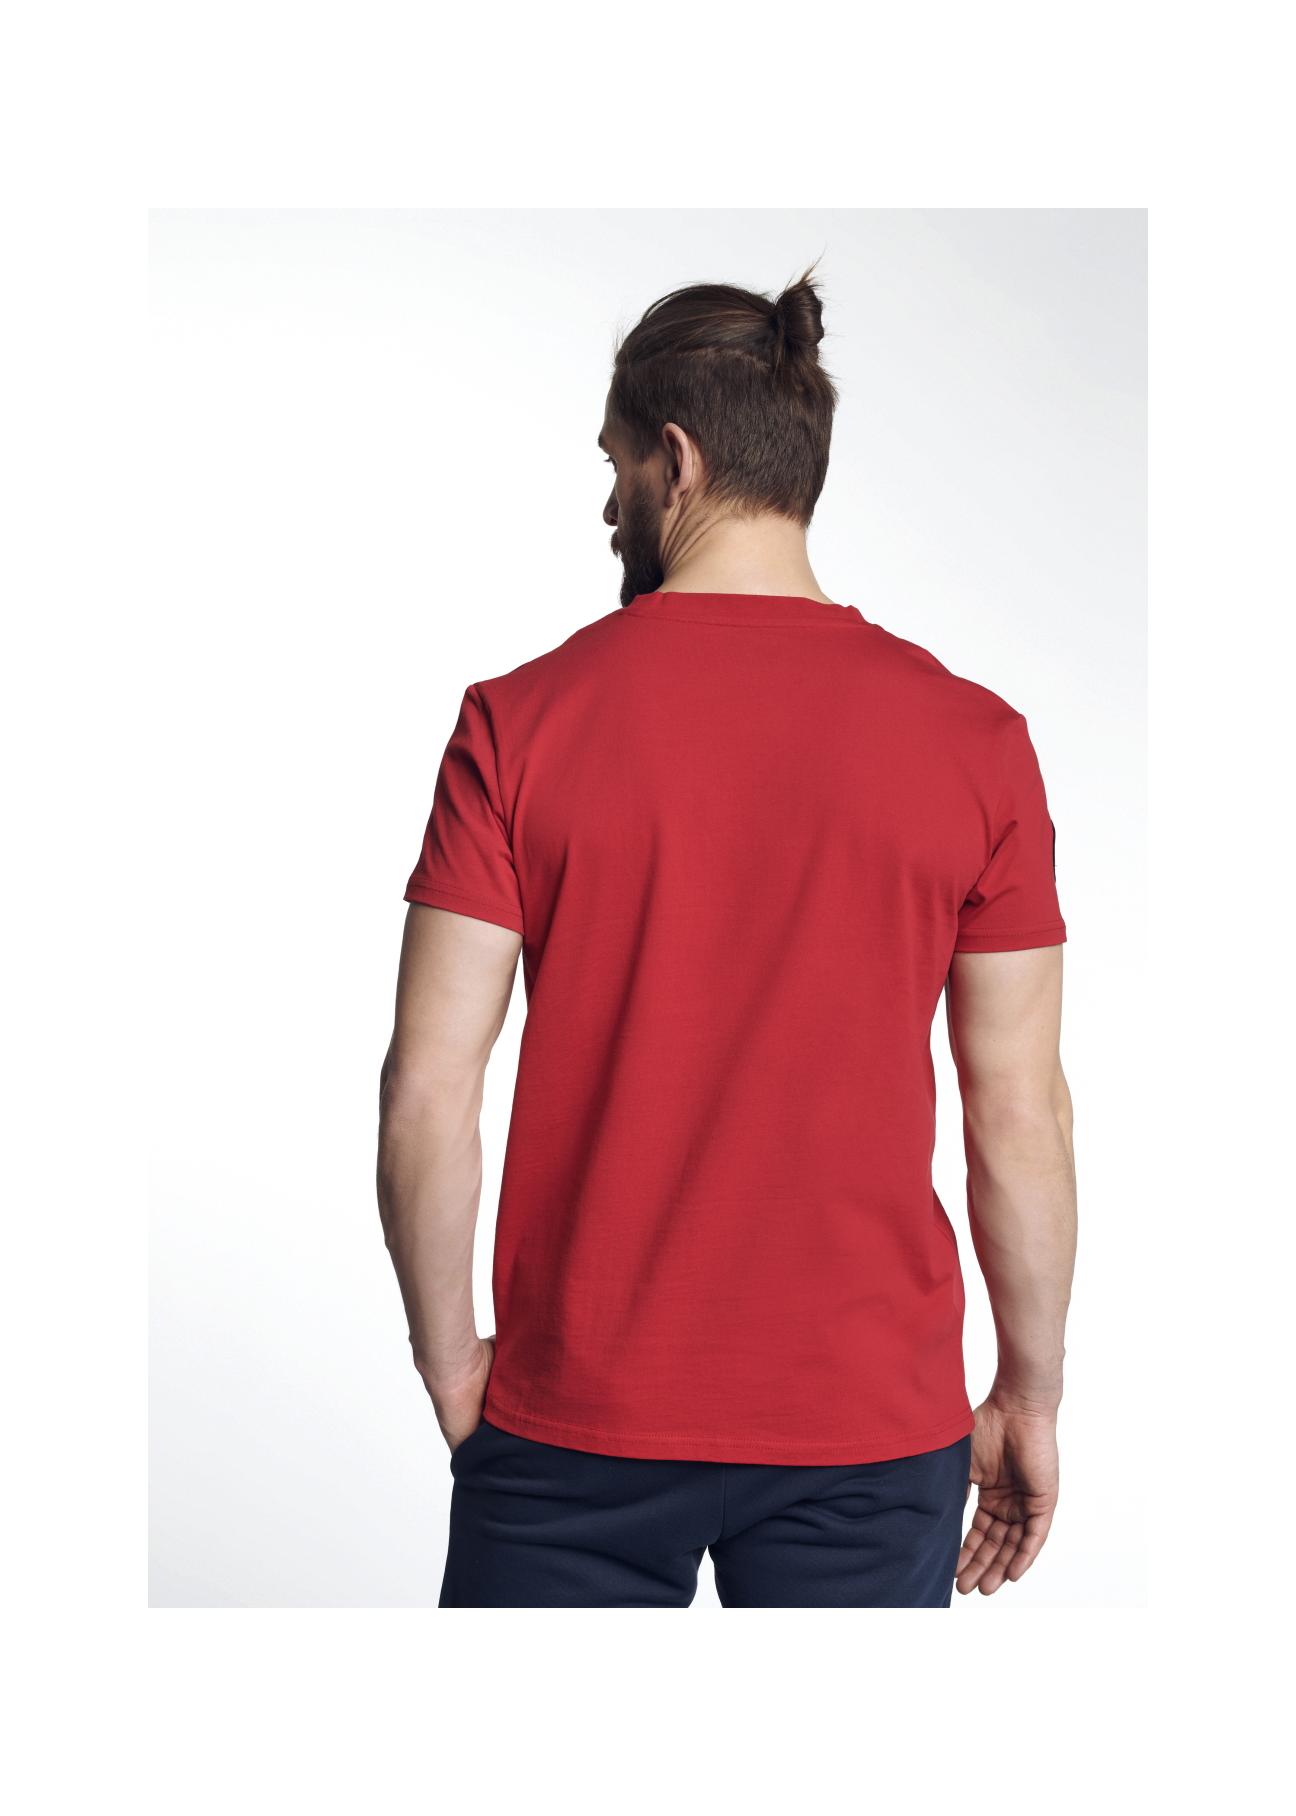 T-shirt męski TSHMT-0056-42(W21)